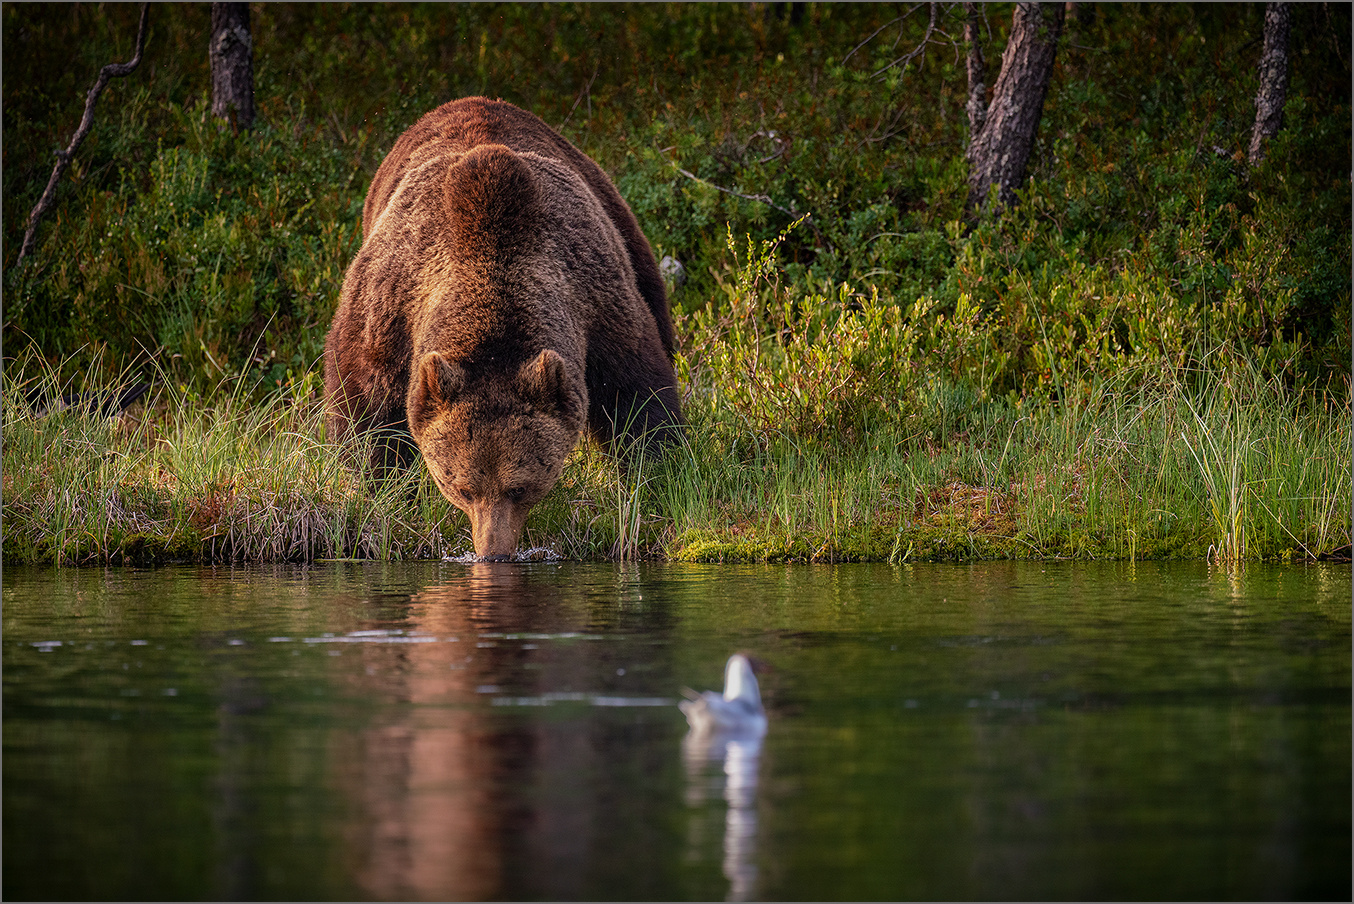 Thirsty bear - durstiger Bär.